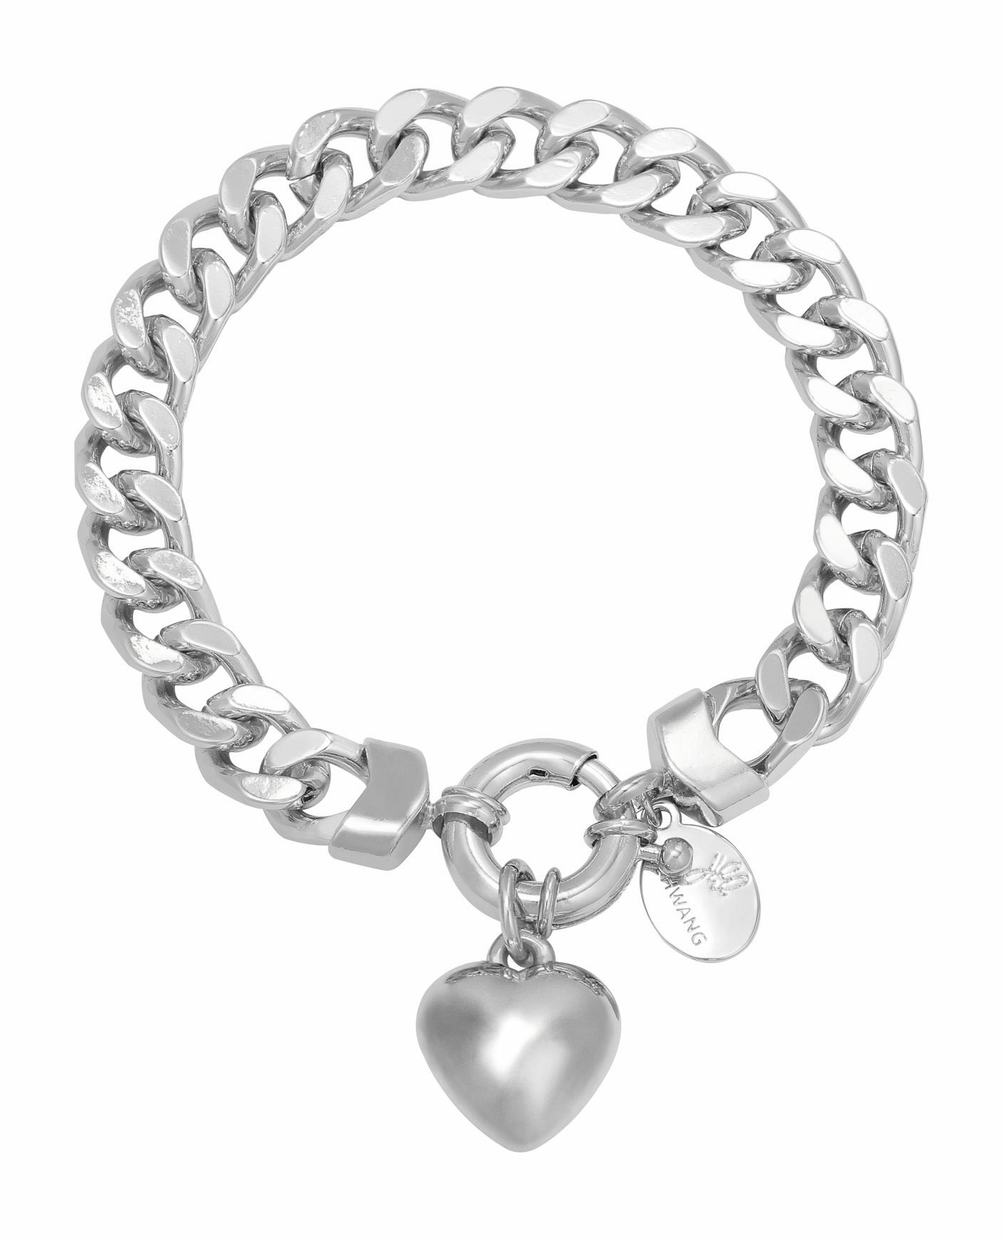 Bracelet chain opal silver